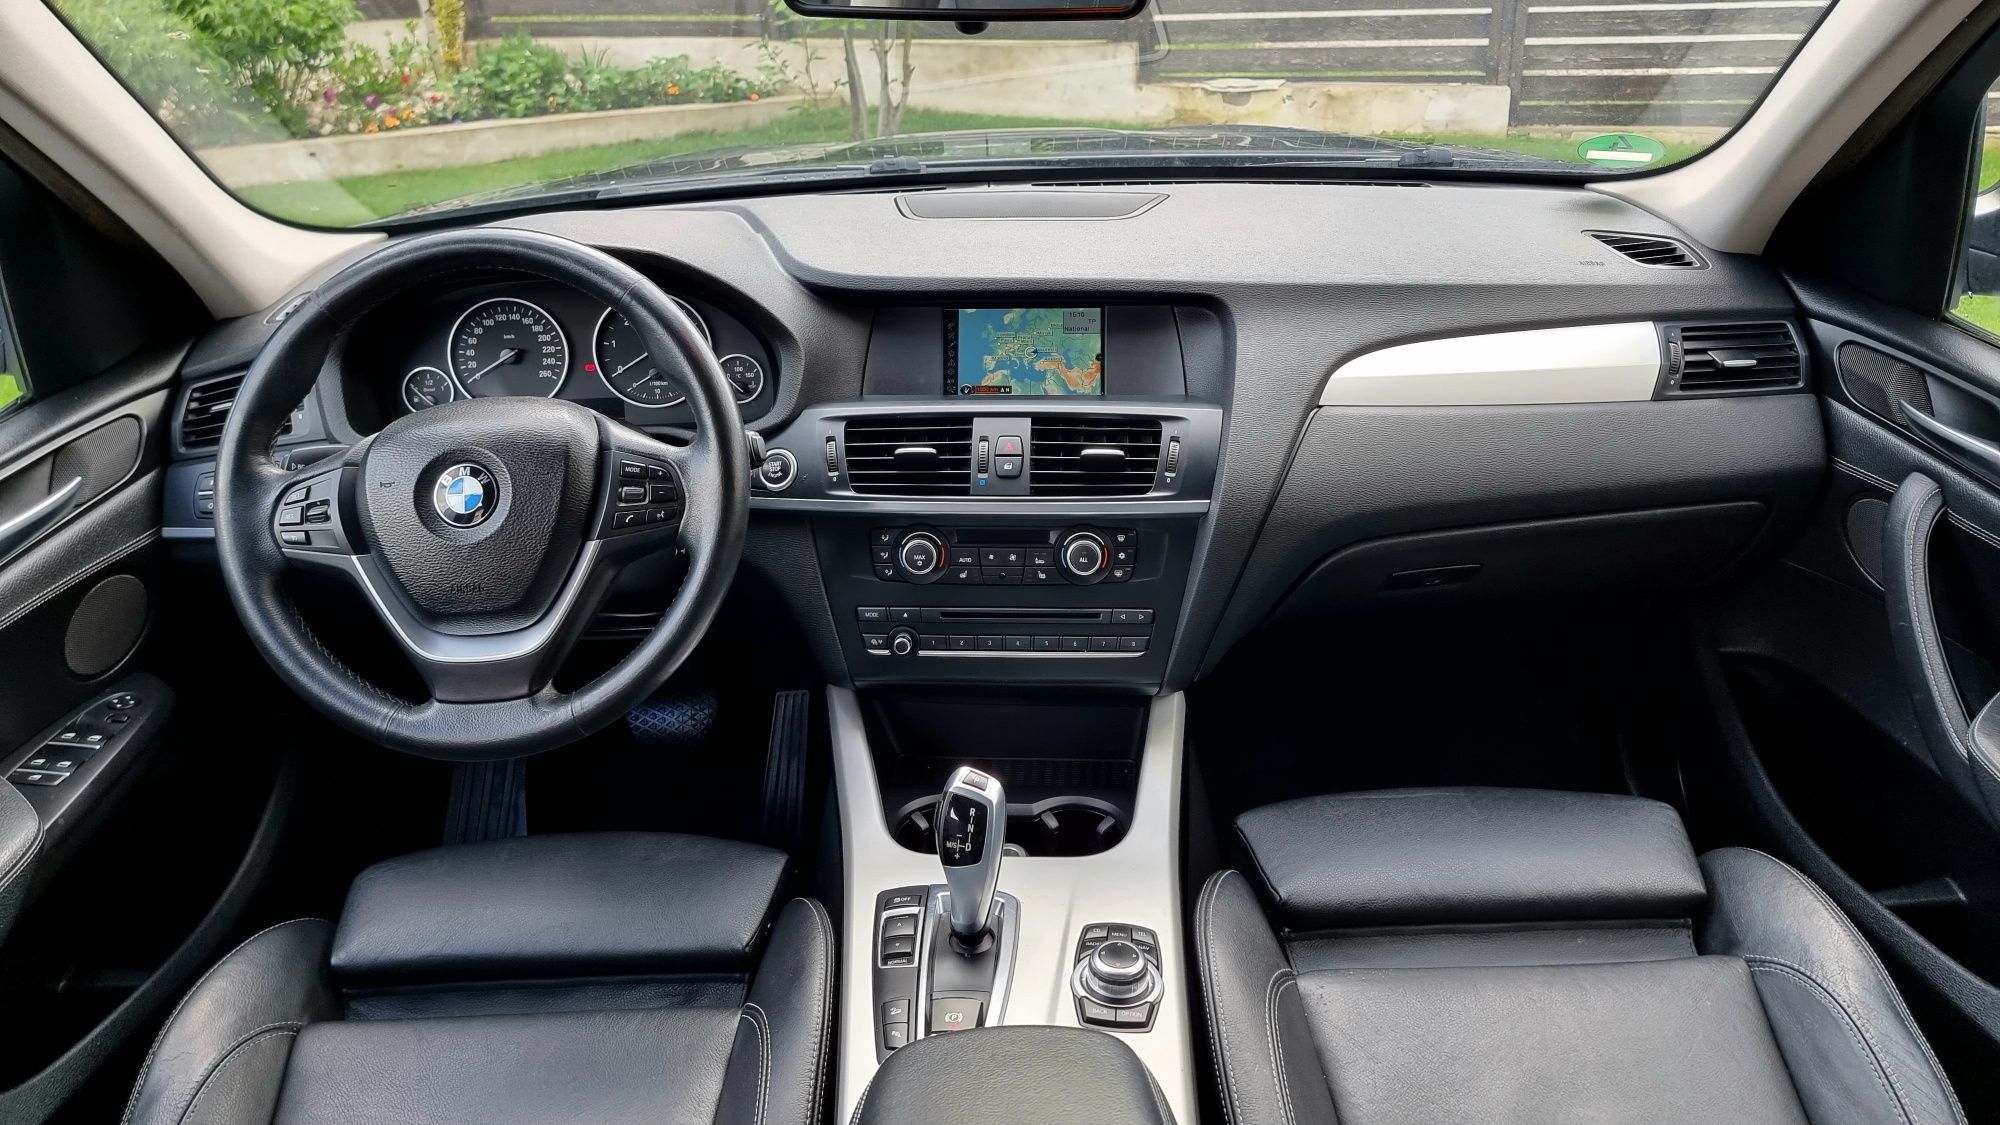 BMW X3 2.0d / xDrive / 184CP / Xenon / Navi